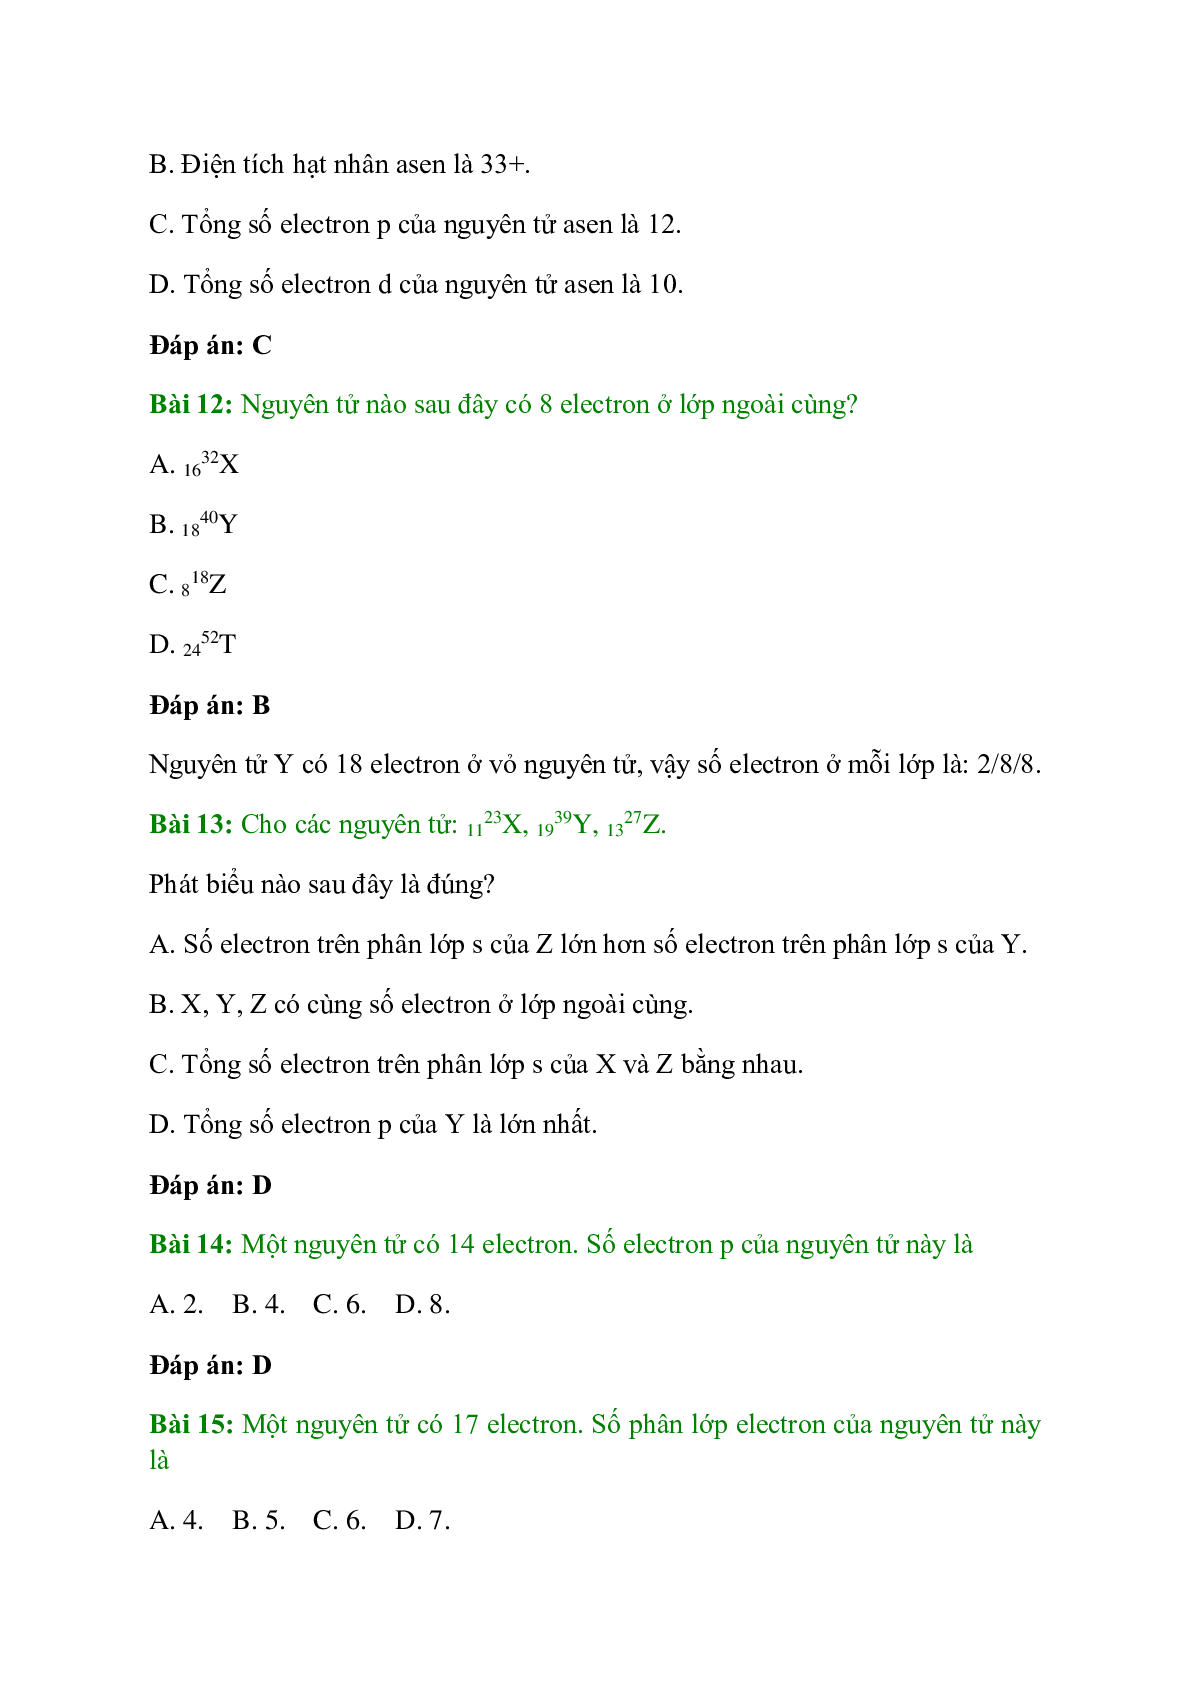 Trắc nghiệm Cấu tạo vỏ nguyên tử có đáp án - Hóa học 10 (trang 4)